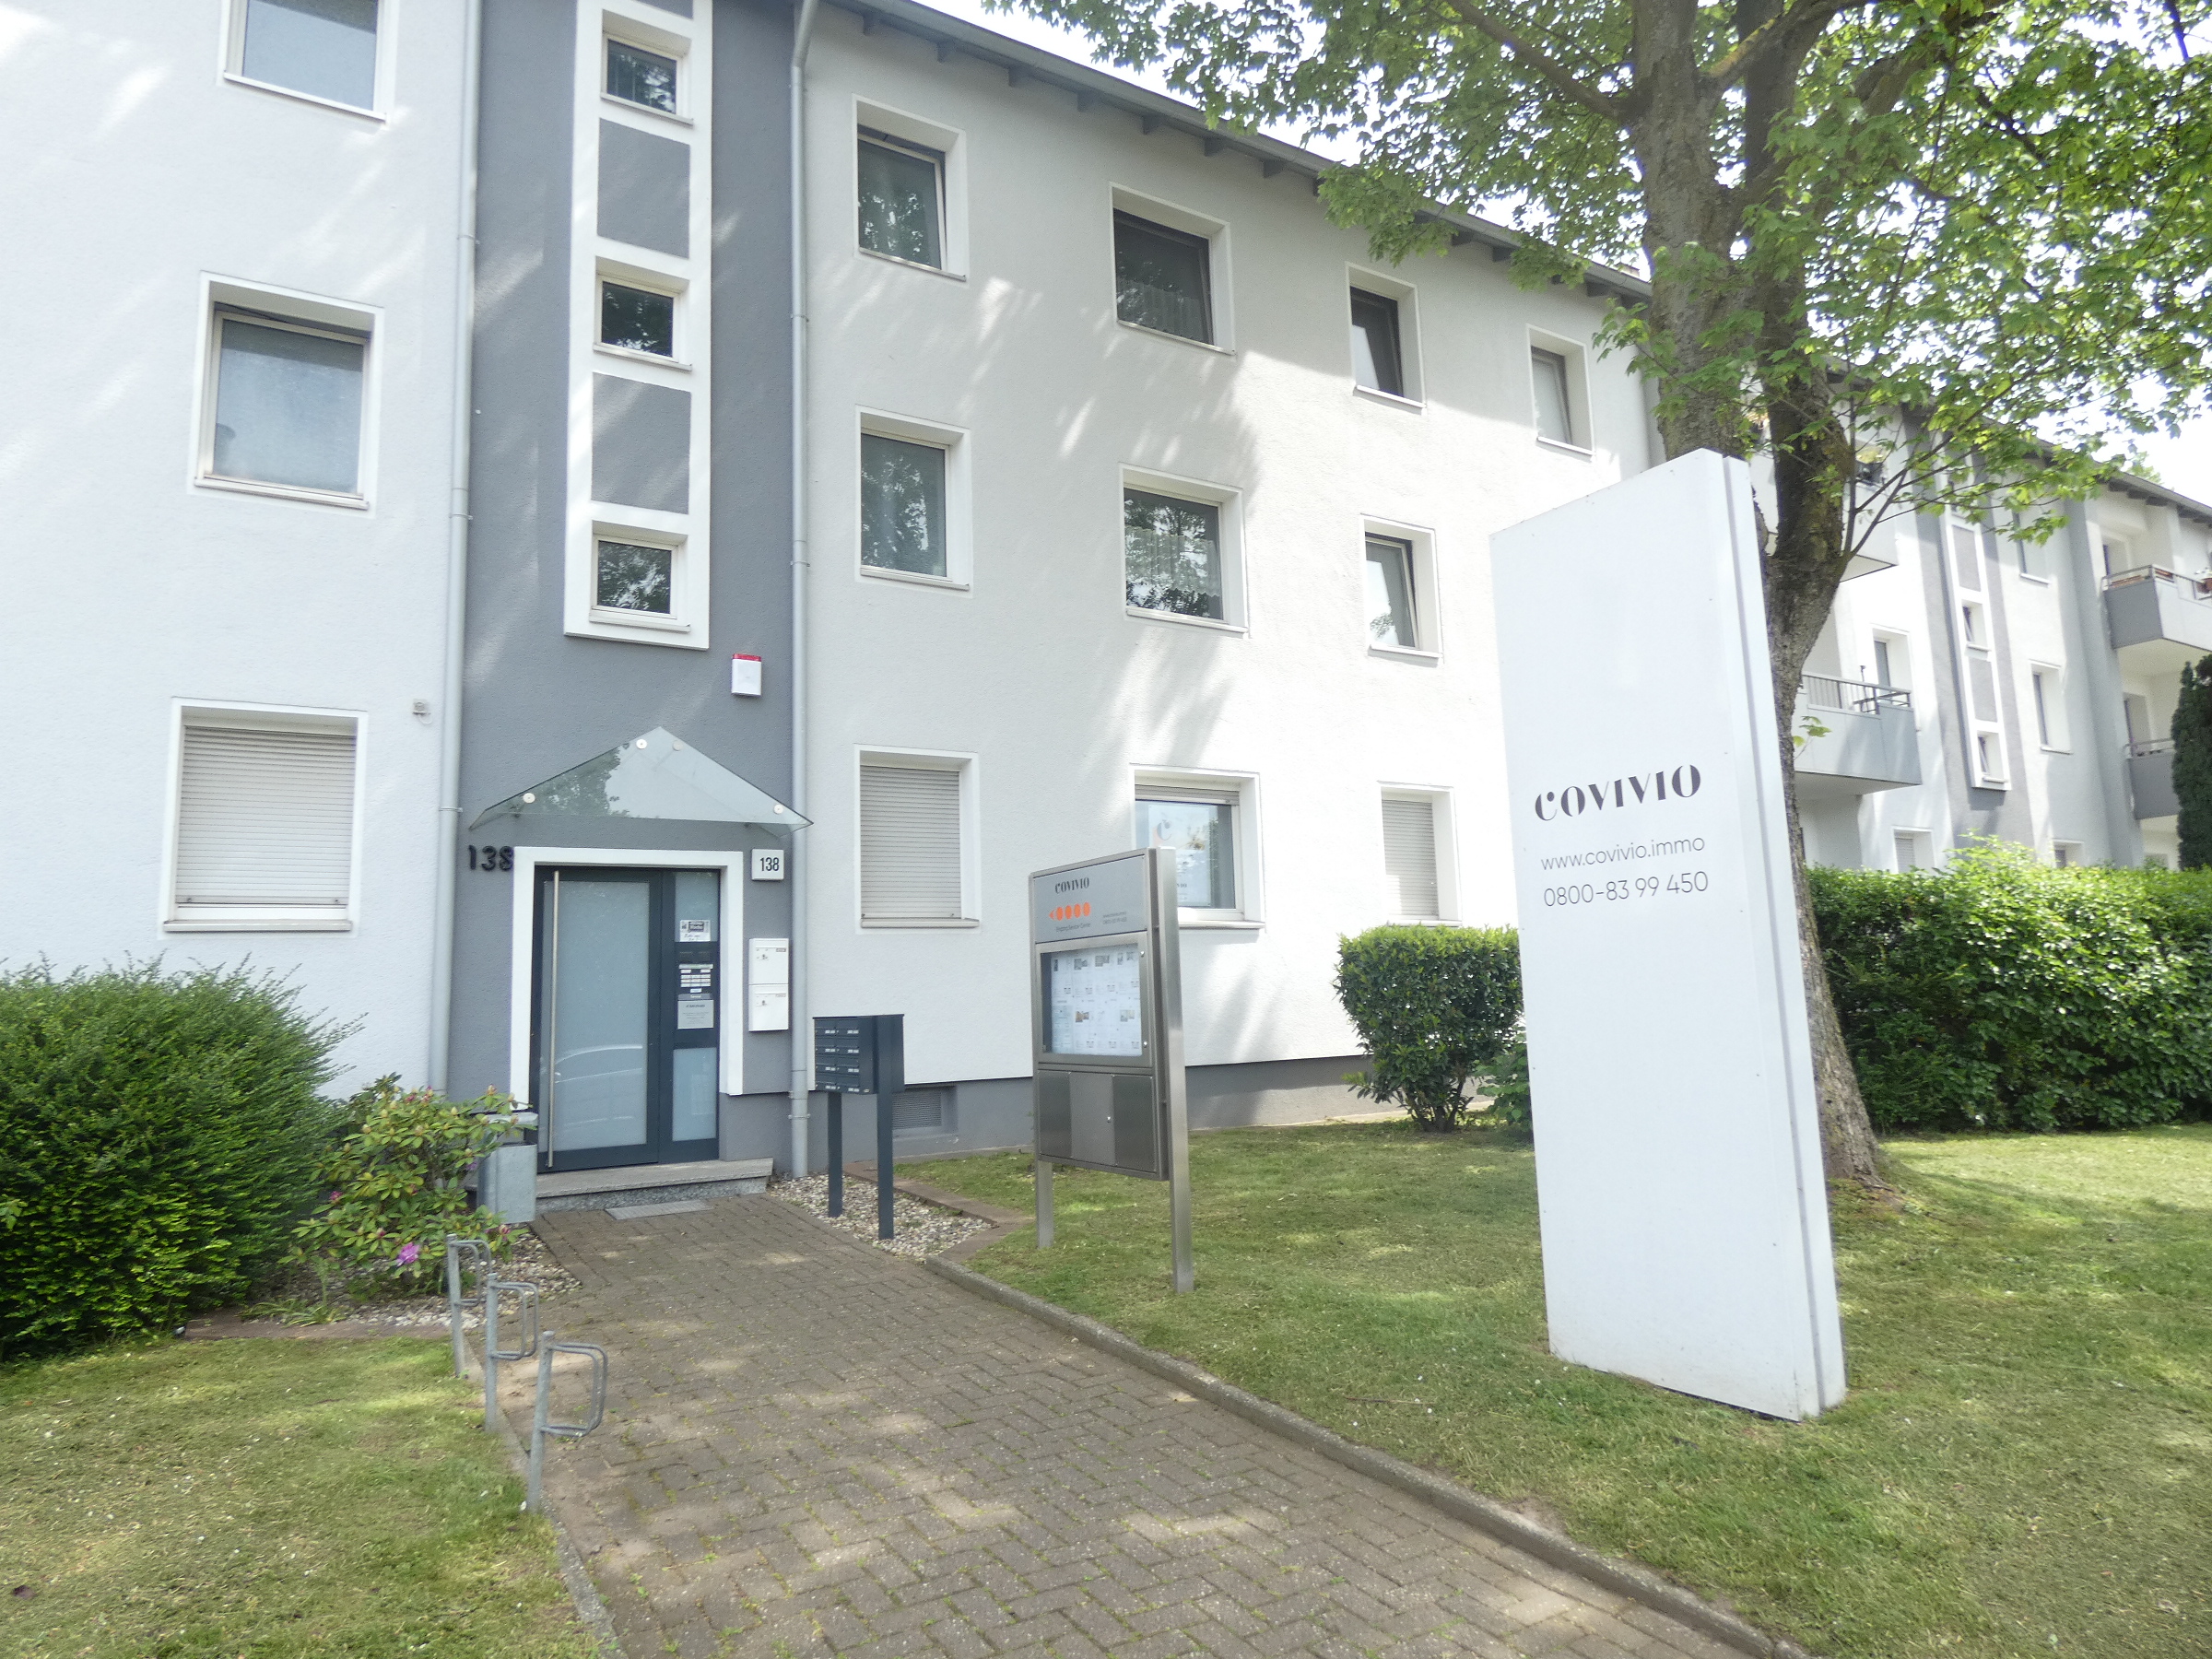 Covivio Service-Center Mülheim, Mellinghofer Straße 138 in Mülheim an der Ruhr